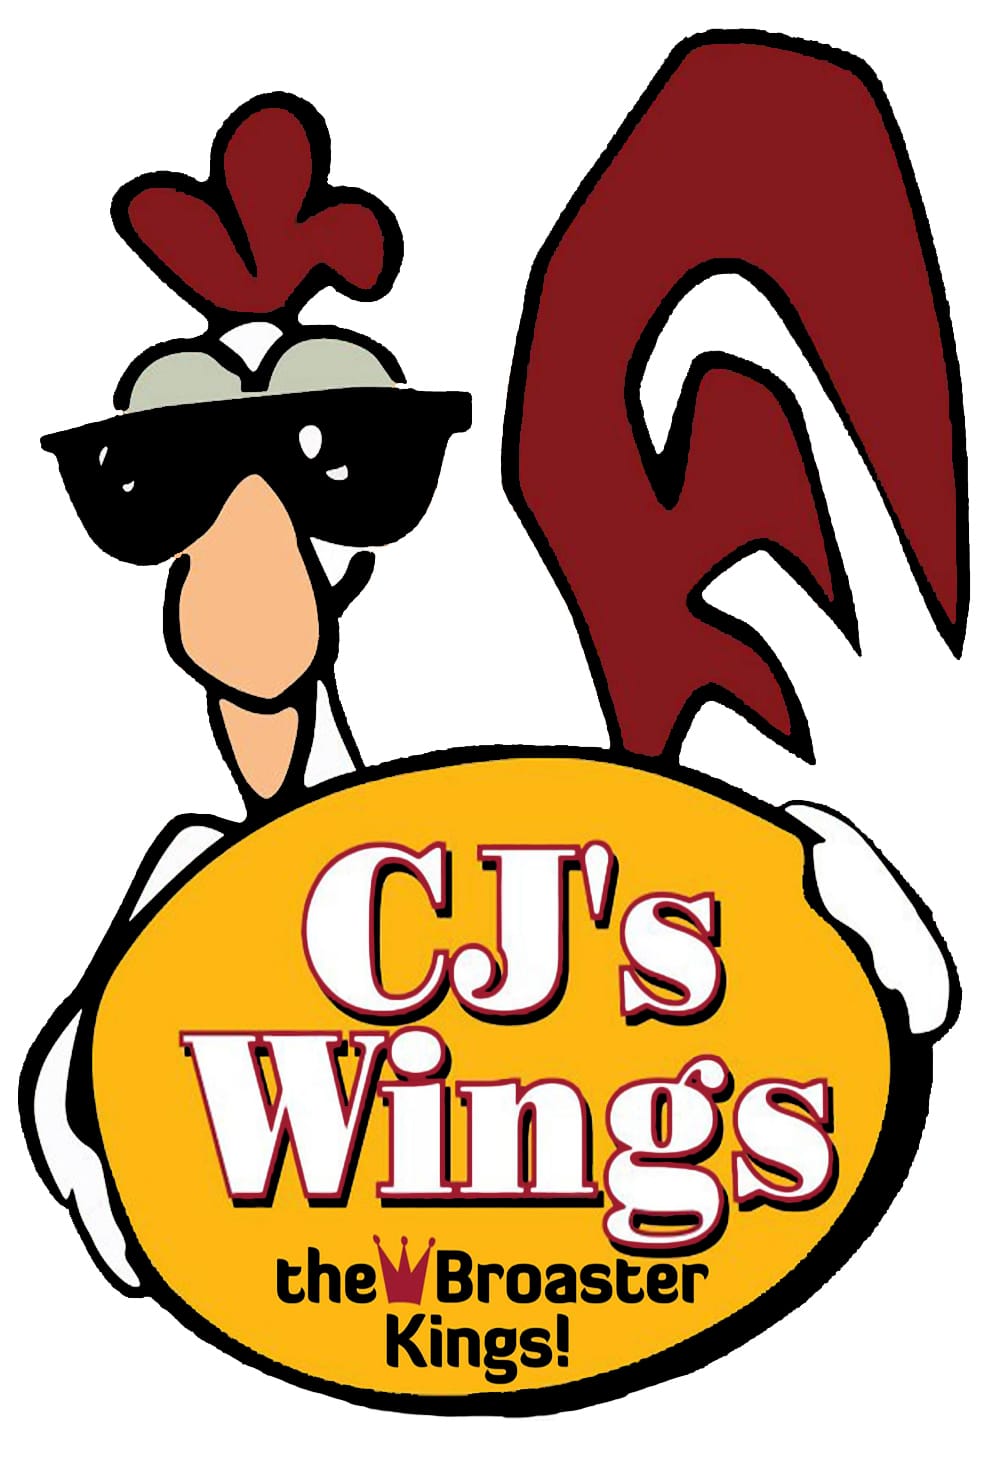 CJs Wings